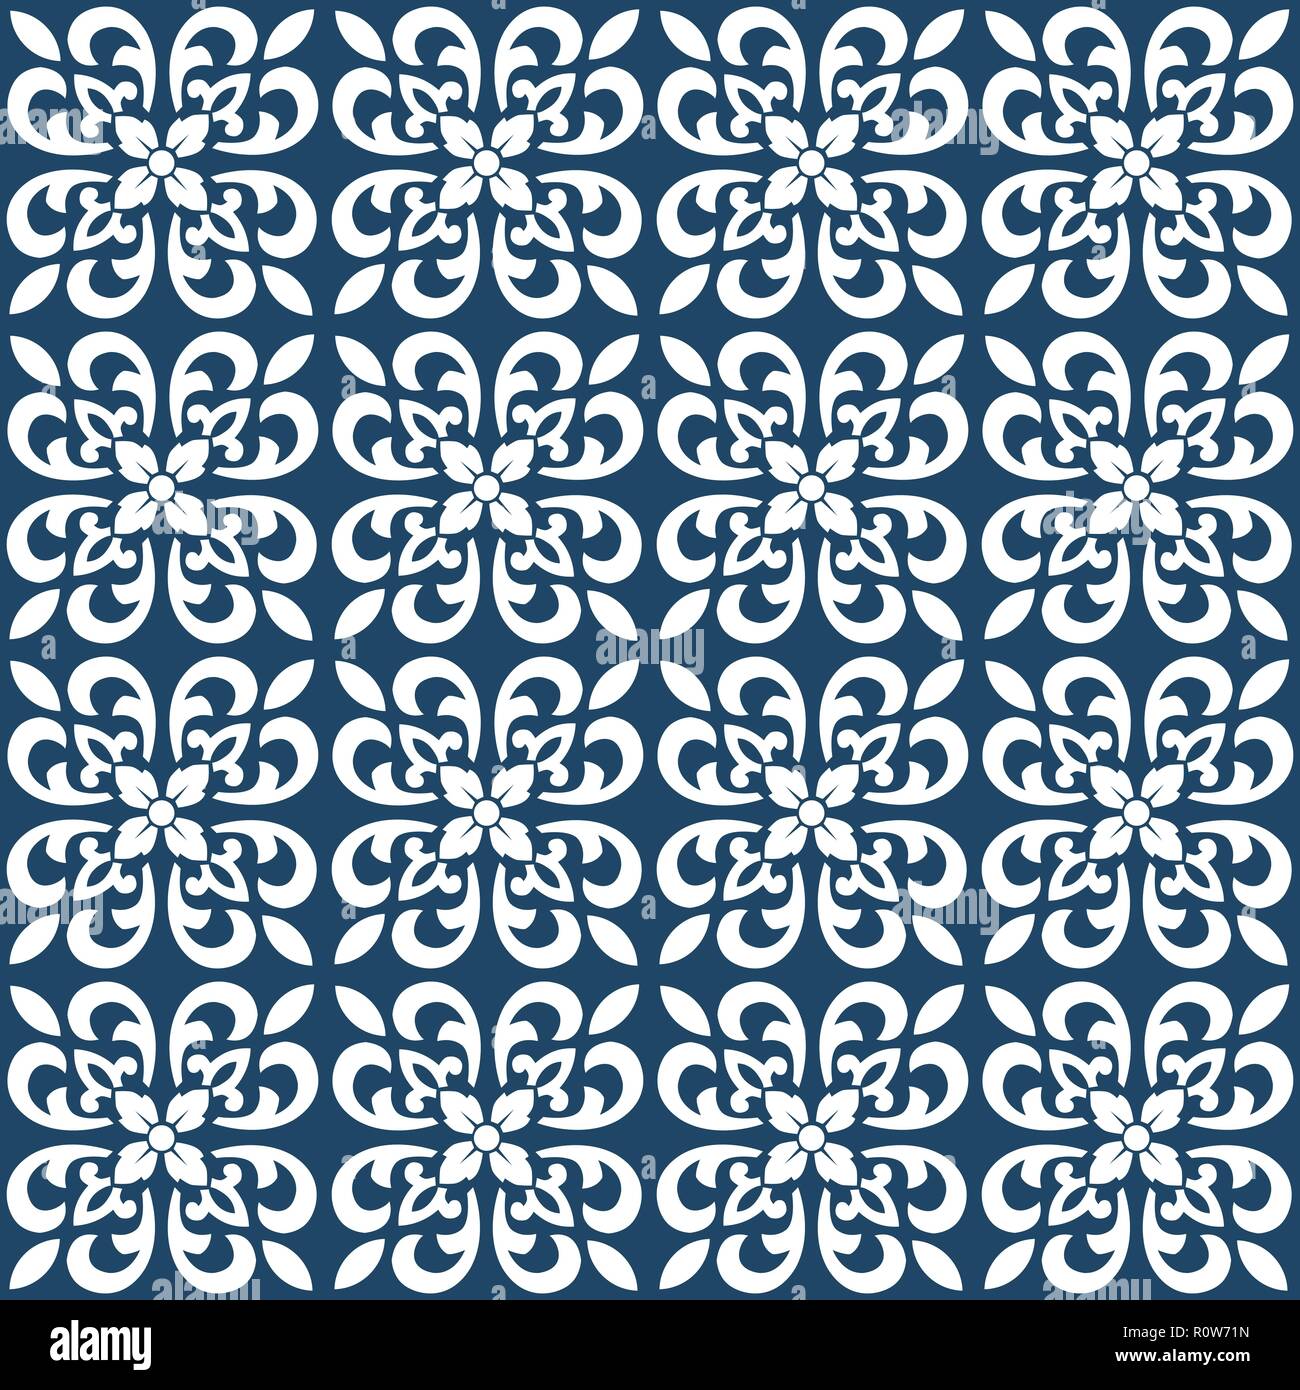 Stile portoghese pattern, usualmente utilizzati nelle piastrelle in Spagna, Portogallo e altri paesi del bacino del Mediterraneo Illustrazione Vettoriale